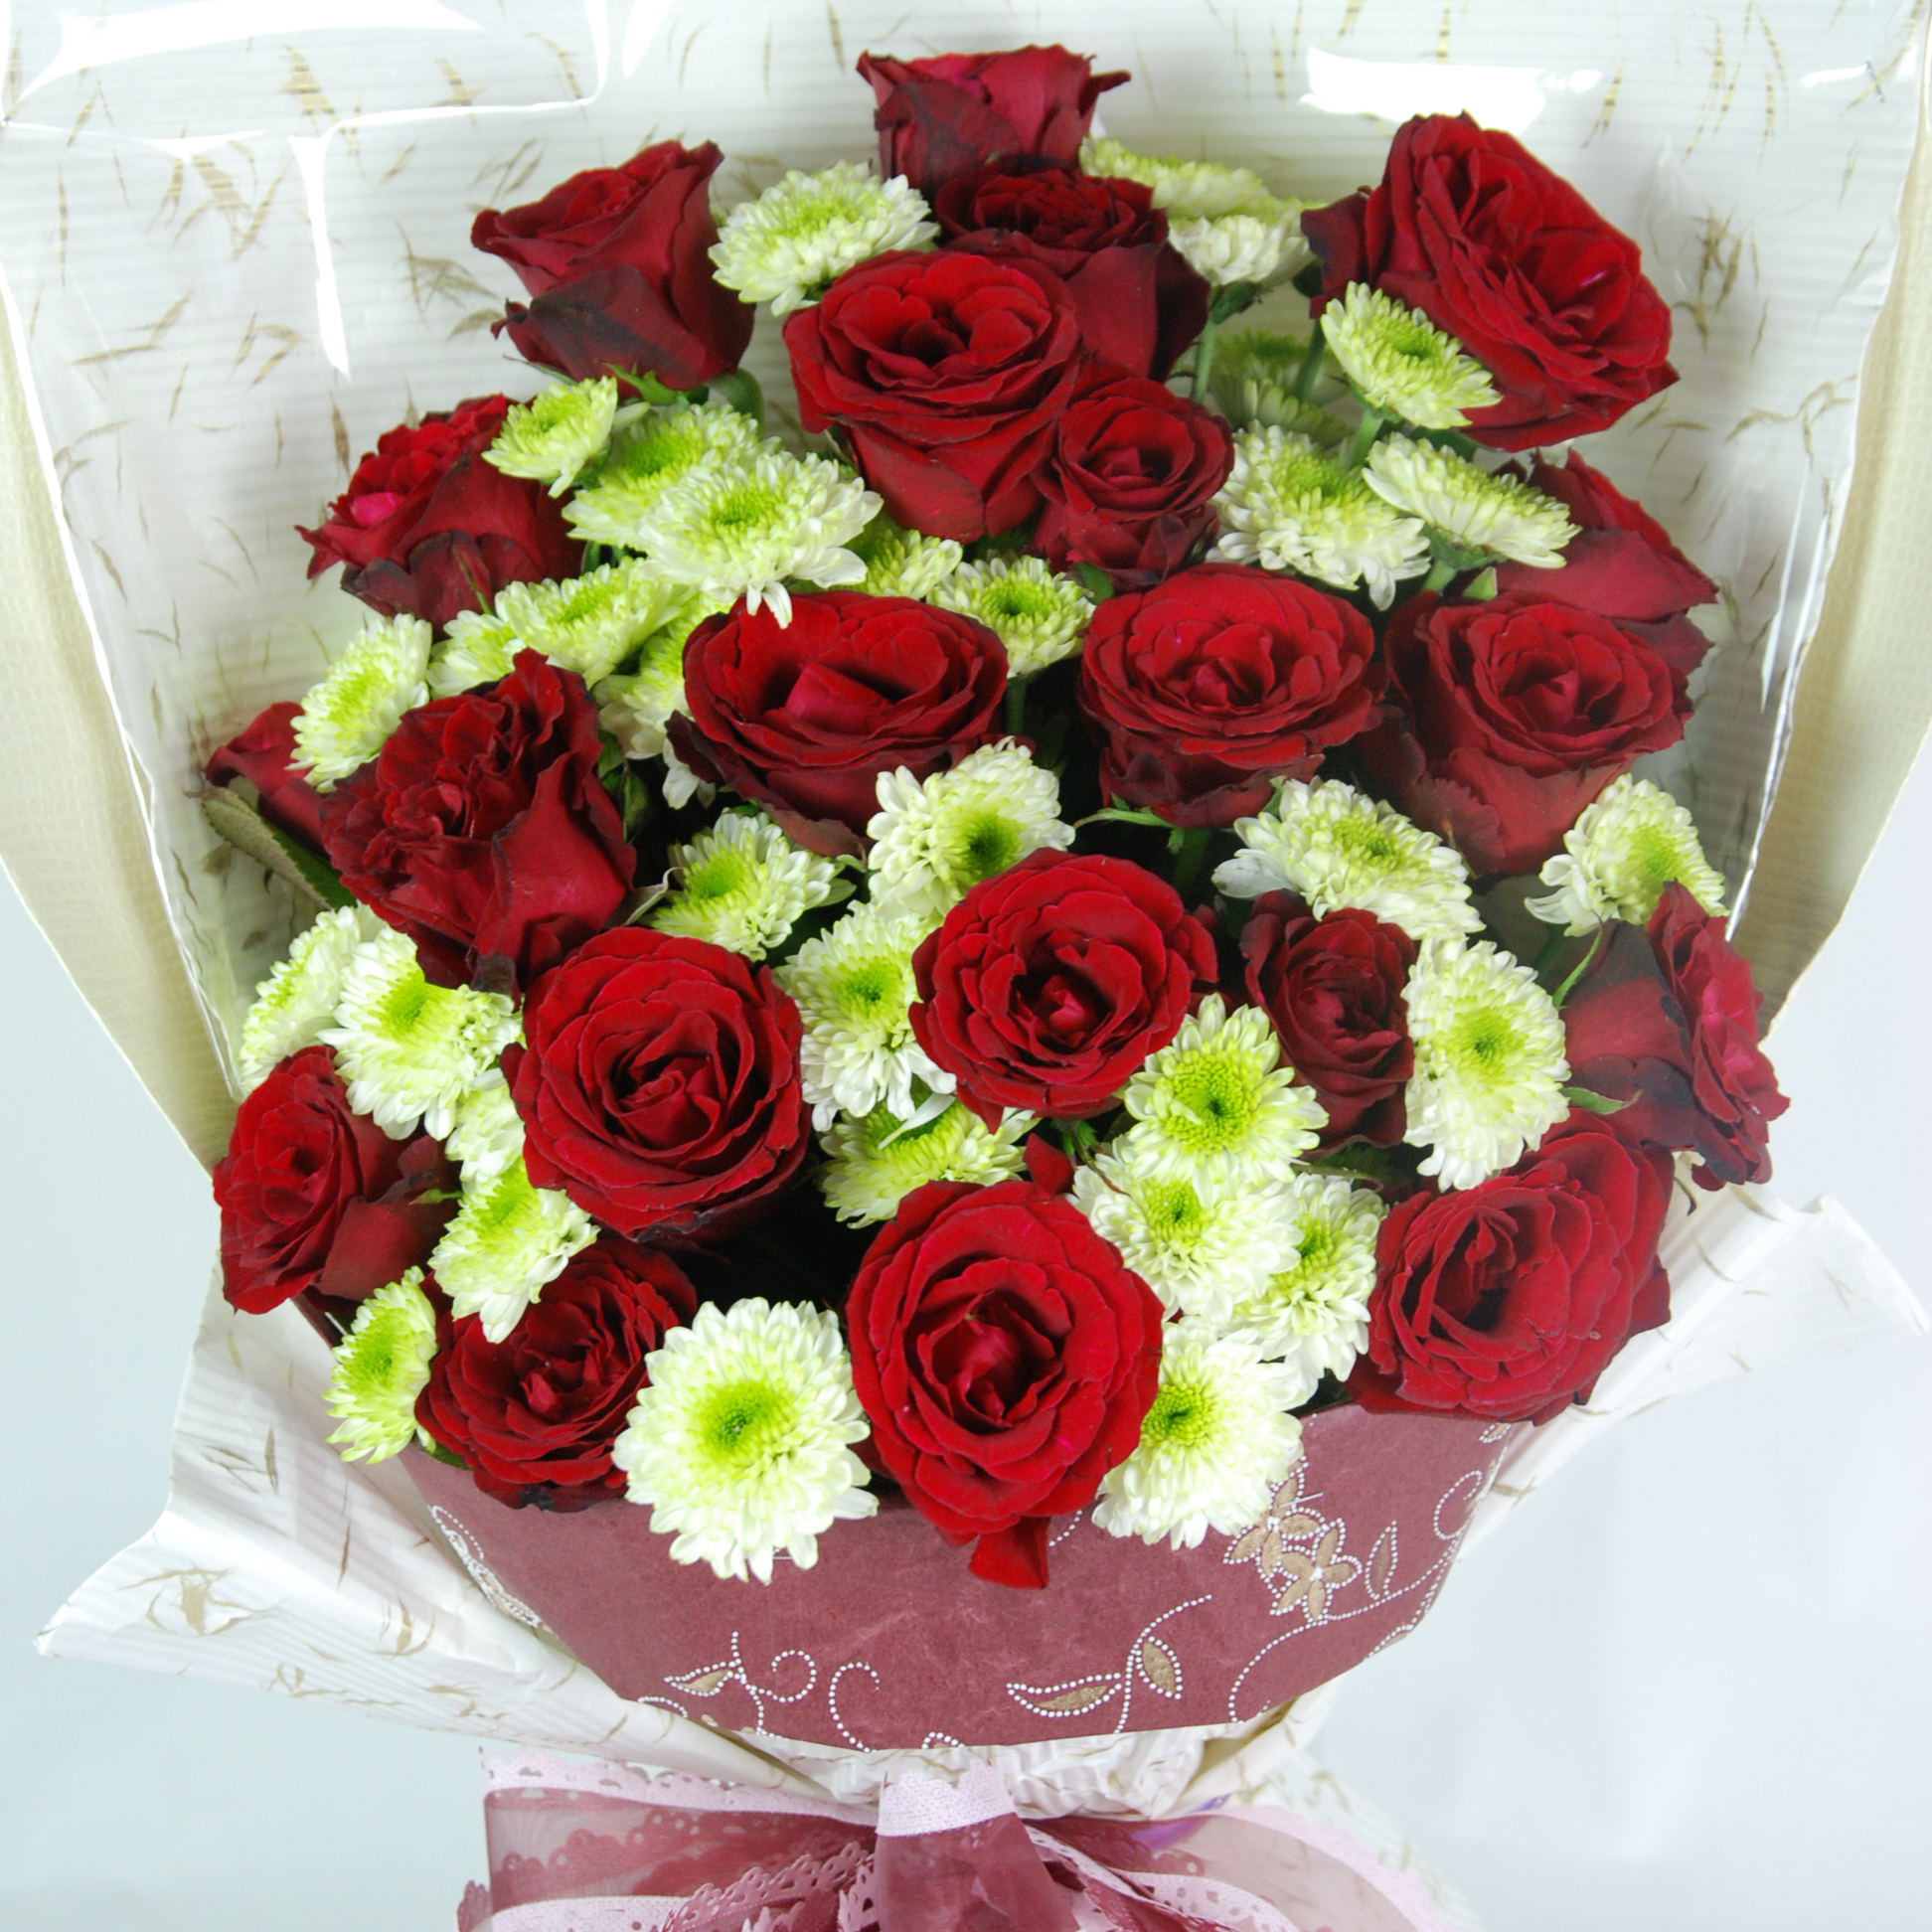 【巧繪網-FR050081無與倫比】=33朵艷麗紅玫瑰+當季新鮮花材=傳情花束/網路花店